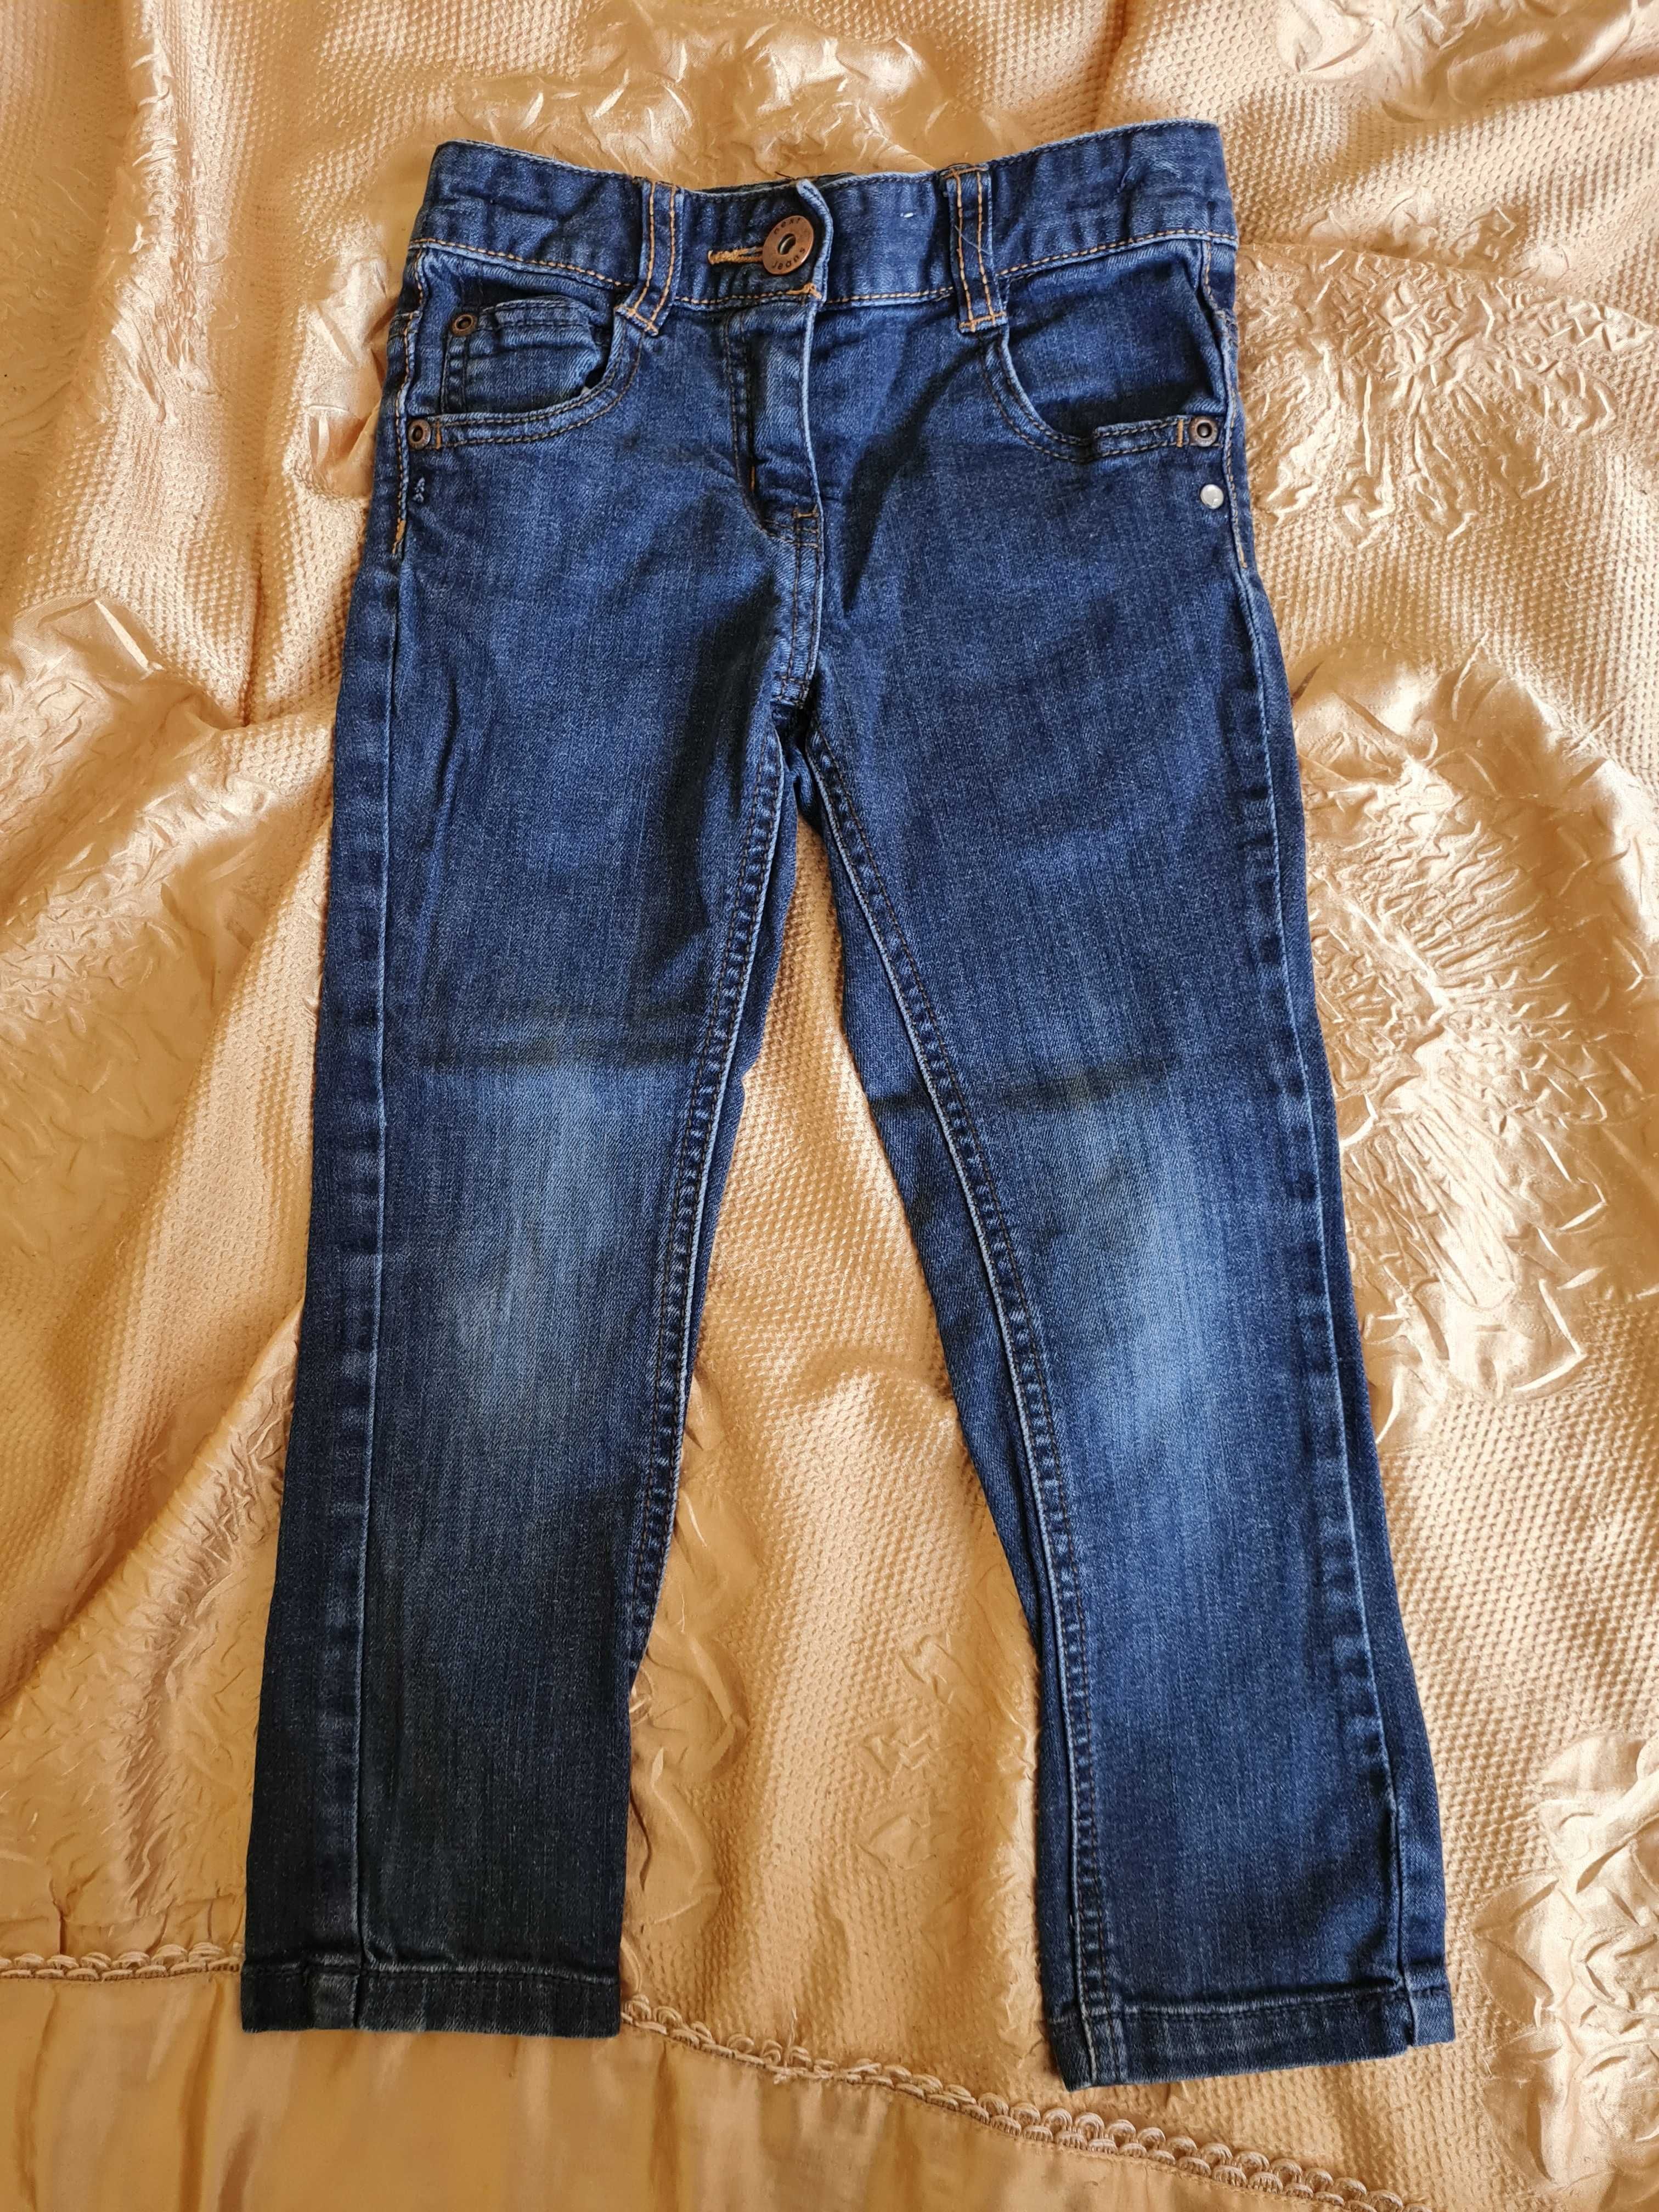 Spodnie jeans dla dziewczynki rozm. 104